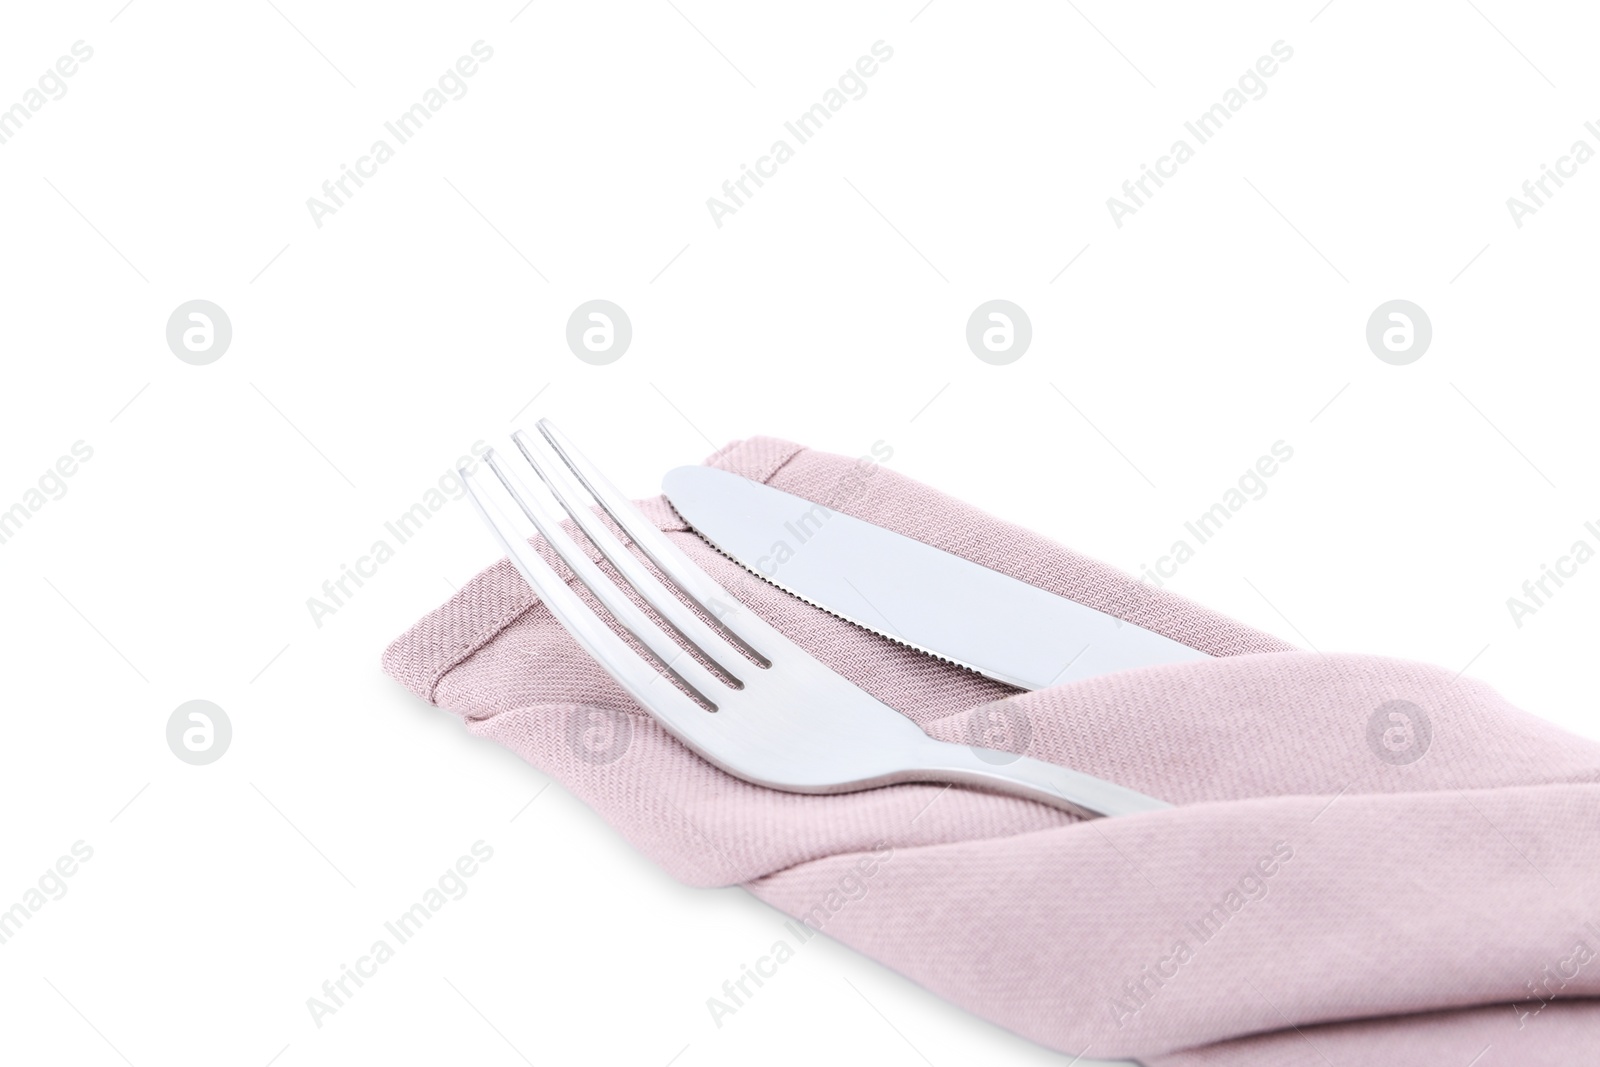 Photo of Stylish shiny cutlery set isolated on white